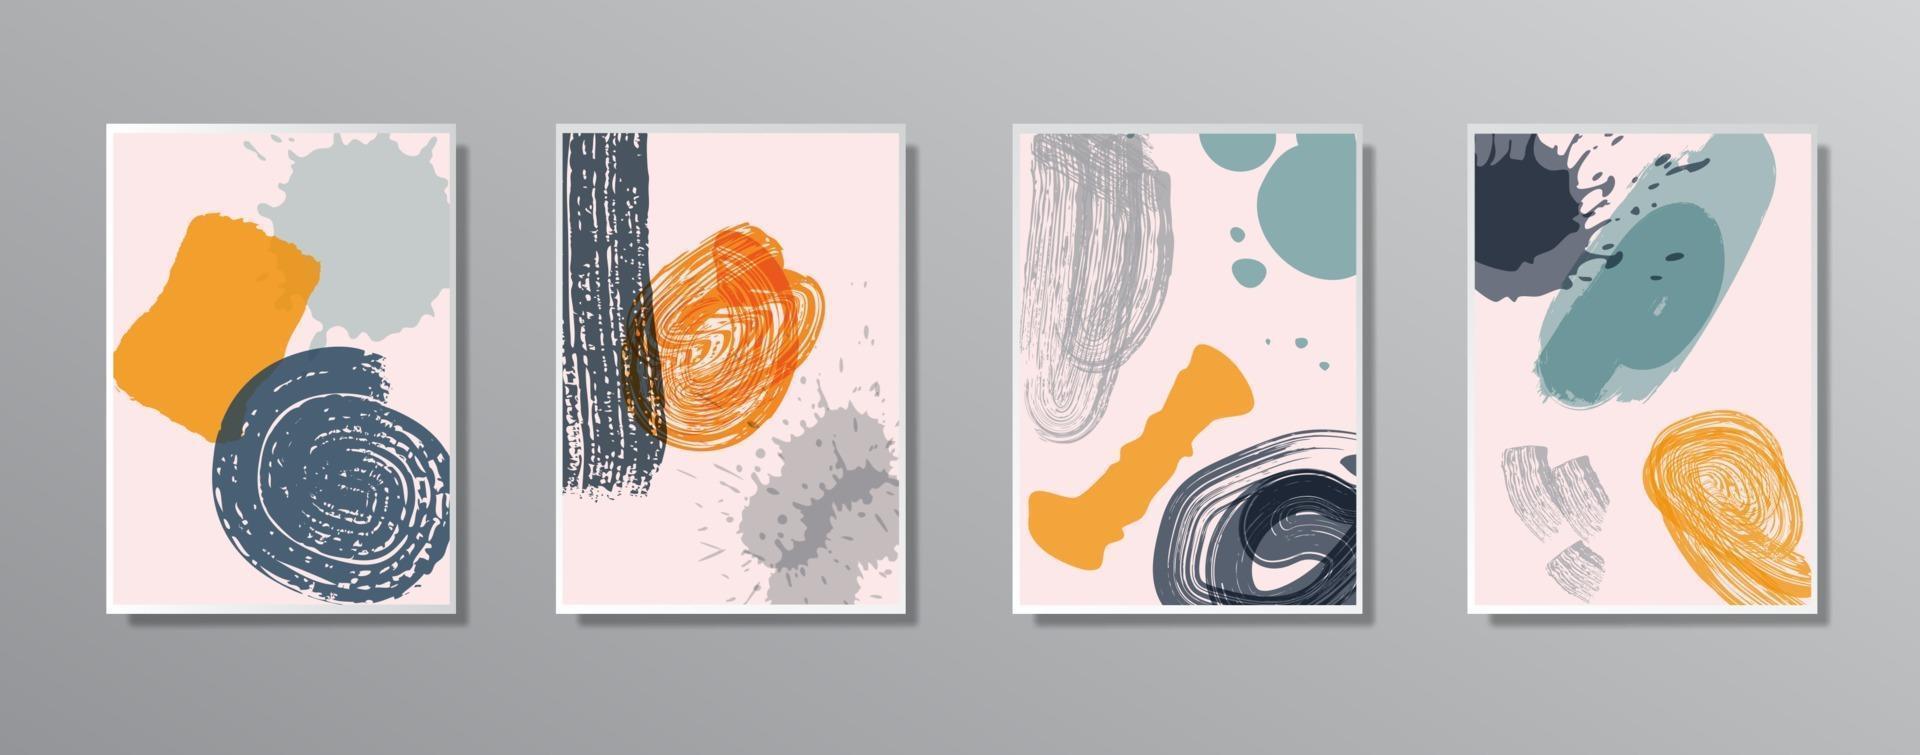 conjunto de ilustraciones en color neutro vintage minimalistas creativas dibujadas a mano, para pared vector